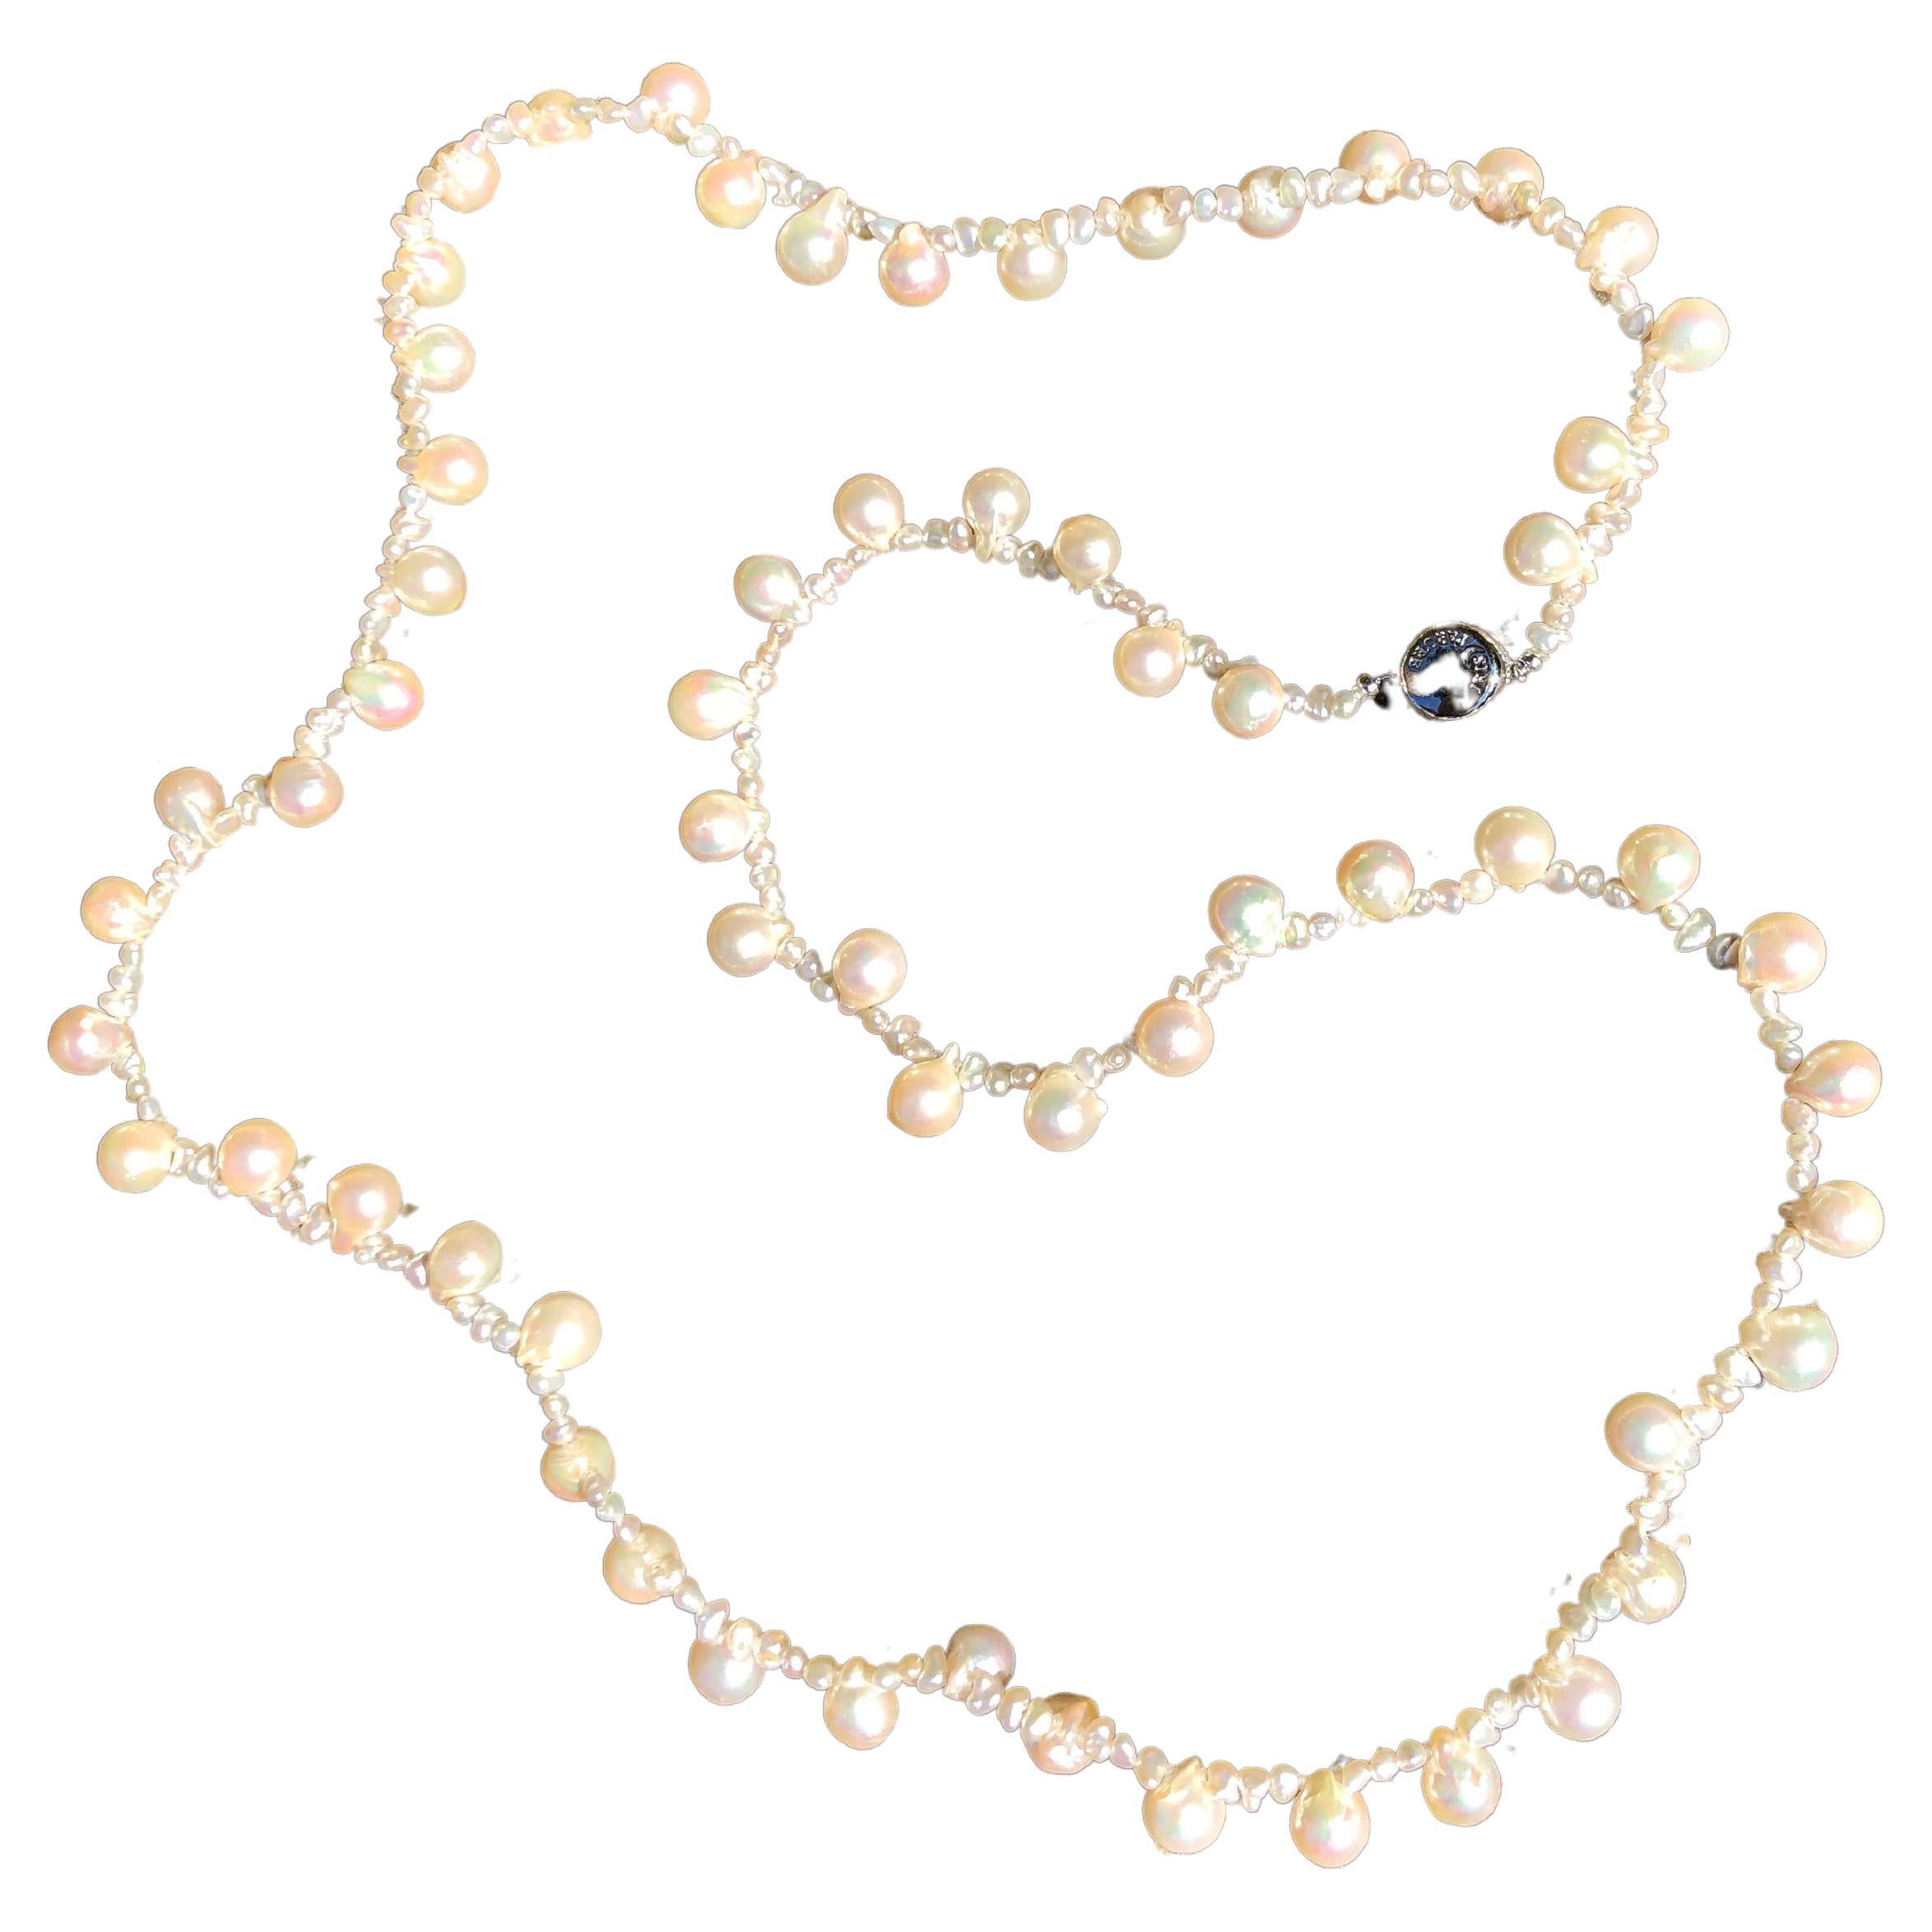 Créateur : IRIS PARURE
Ferme perlière : Ehime, Uwajima, JAPON
Caractéristiques : non coloré et non blanchi, BENI AKOYA®.
Taille de la perle : 8.00mm-9.00mm
Nombre de perles : 62

 Depuis sa création en 1953, IRIS PARURE fabrique des bijoux en perles